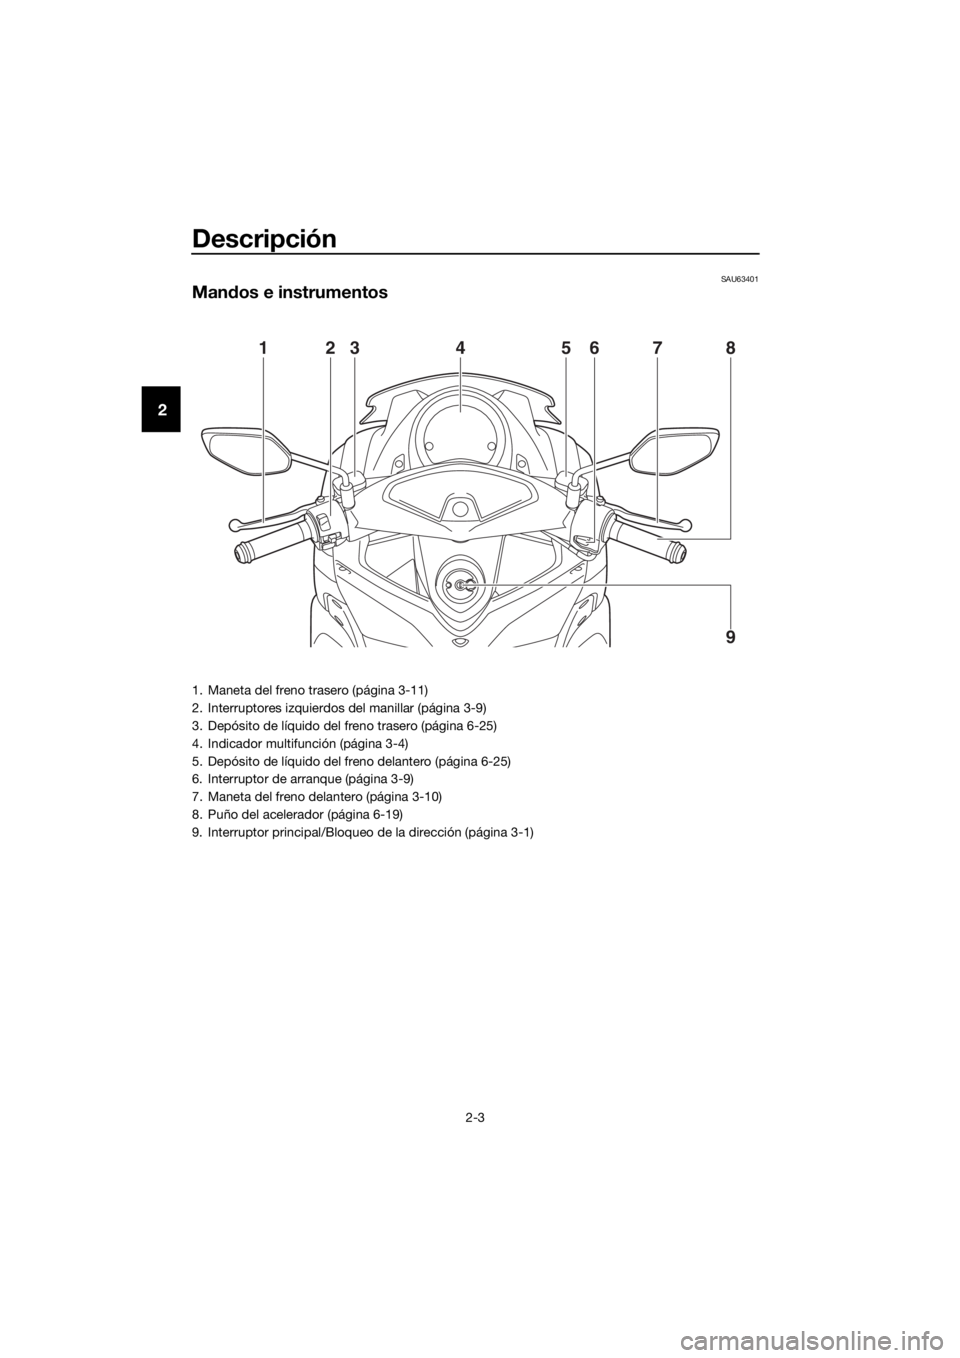 YAMAHA NMAX 150 2019  Instructieboekje (in Dutch) Descripción
2-3
2
SAU63401
Mandos e instrumentos
12376854
9
1. Maneta del freno trasero (página 3-11)
2. Interruptores izquierdos del manillar (página 3-9)
3. Depósito de líquido del freno traser